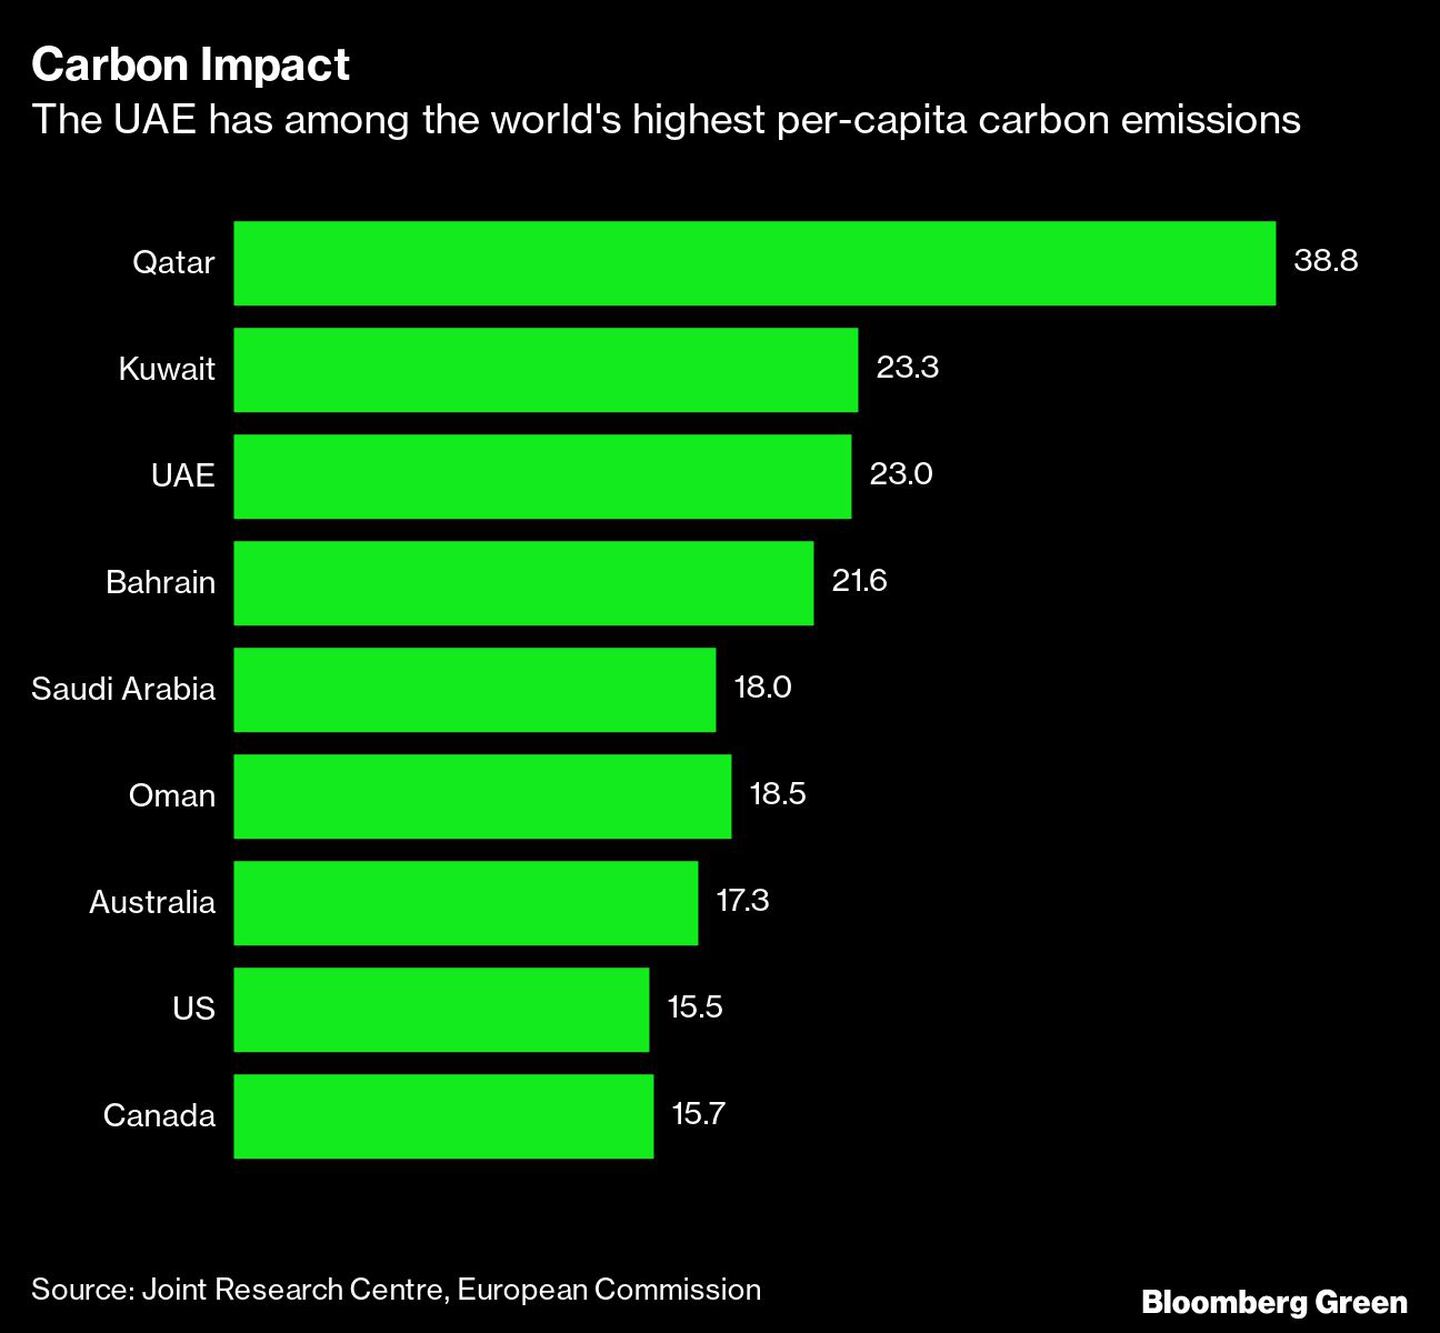 Los Emiratos Árabes Unidos tiene una de las emisiones per cápita más altas del mundo.dfd